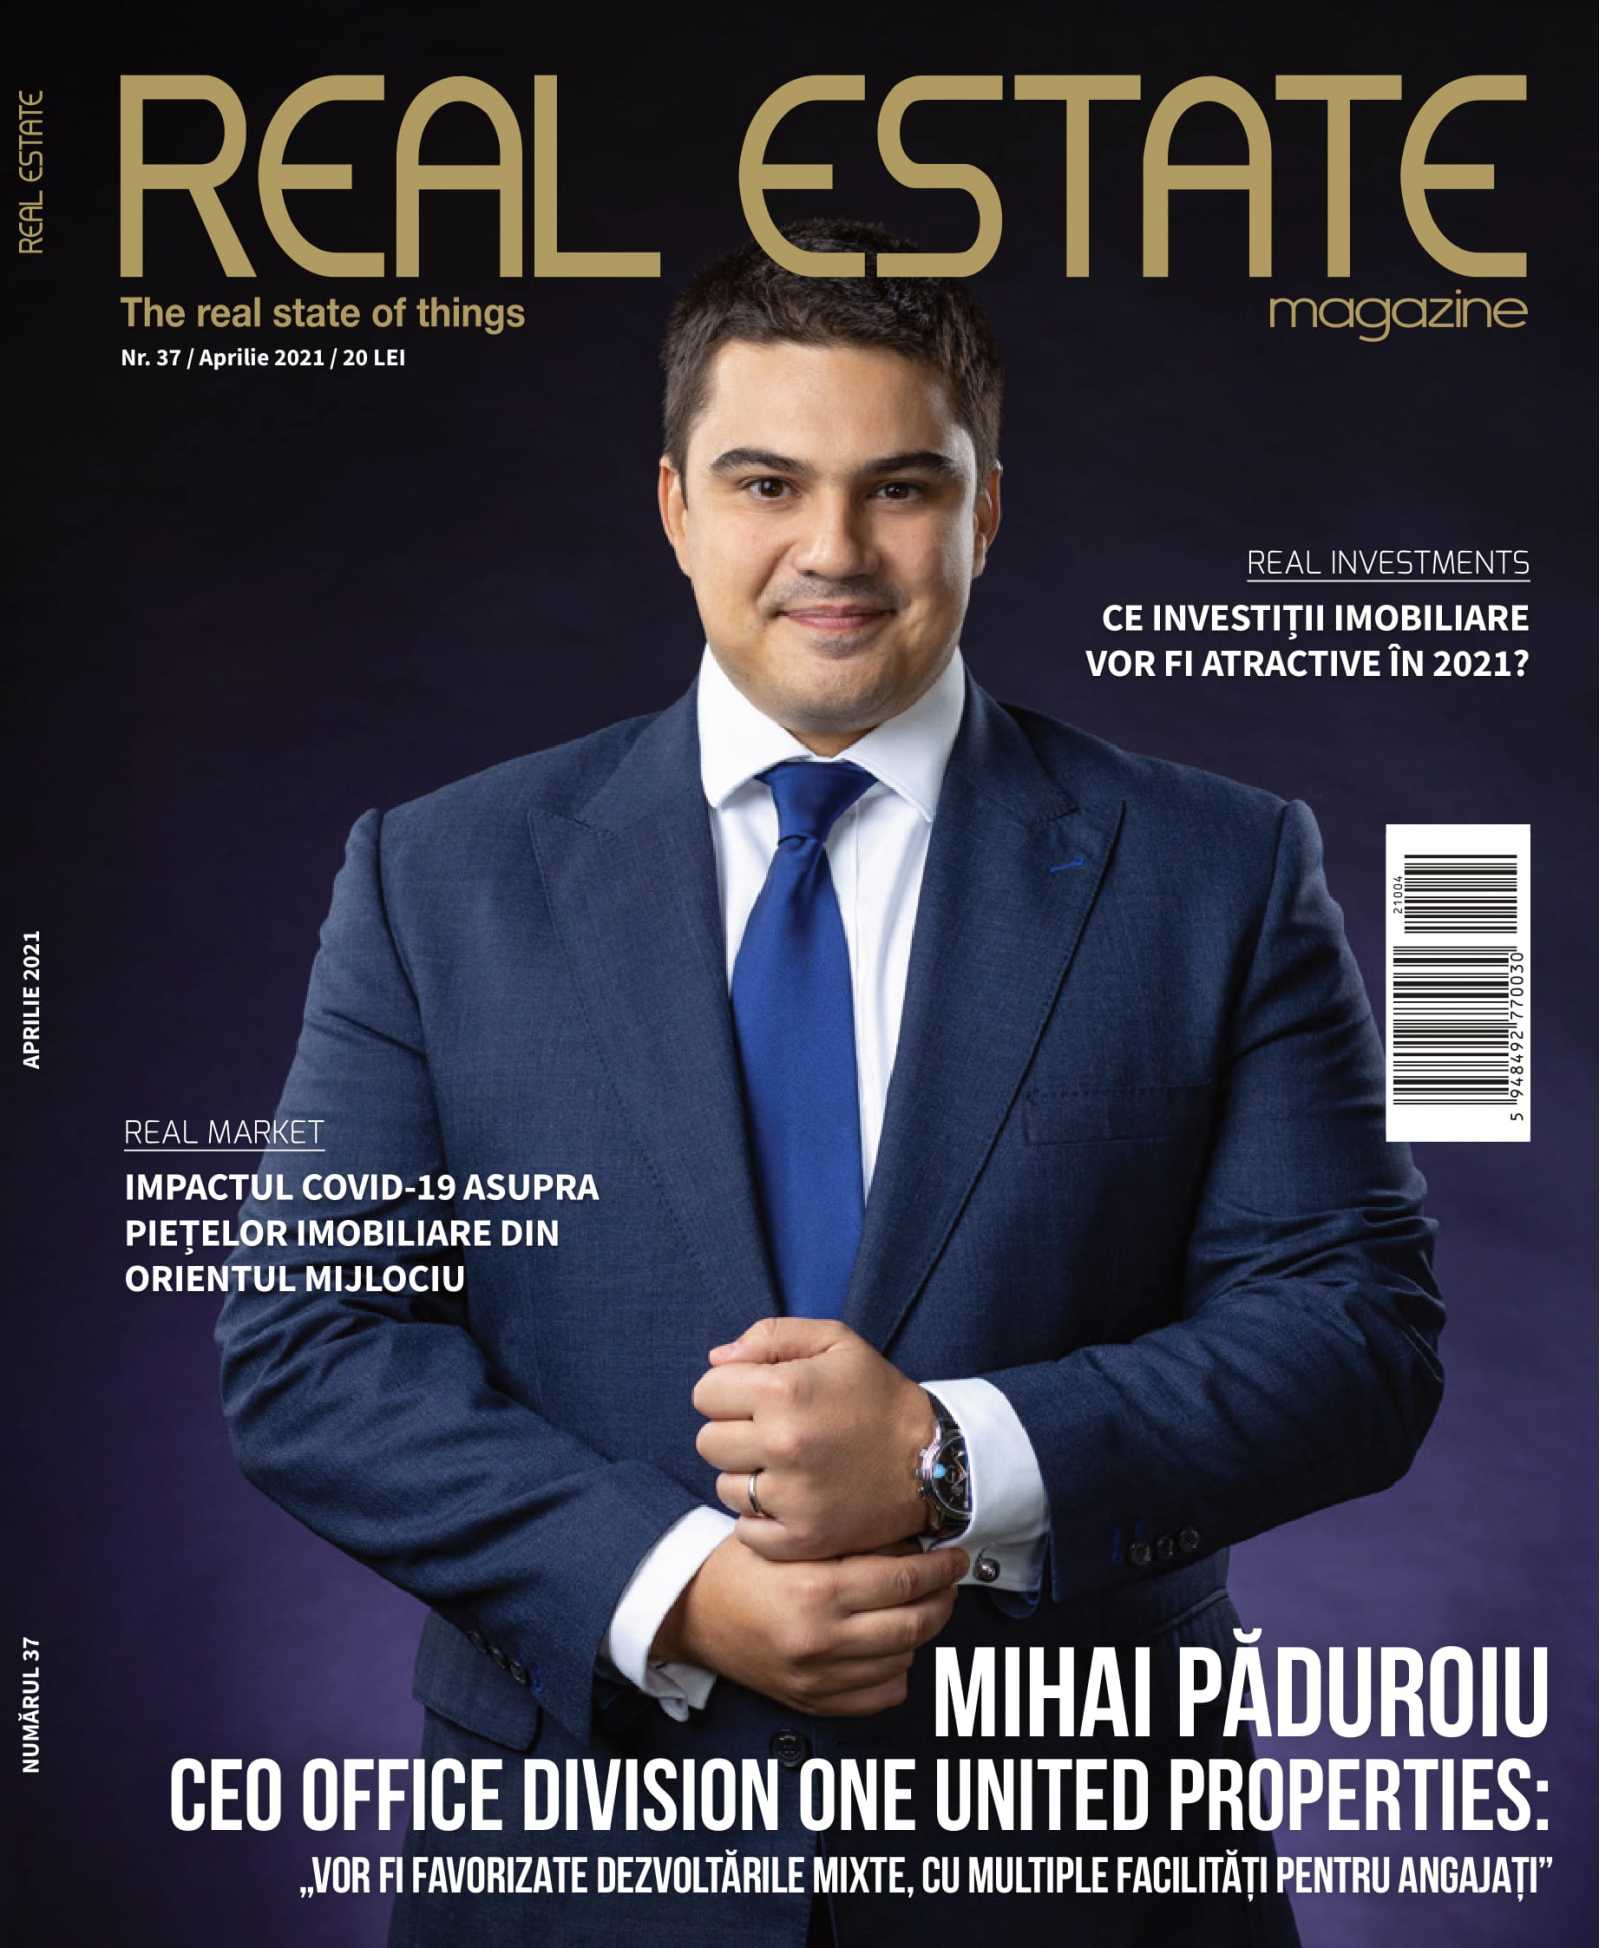 Real Estate Magazine Cover